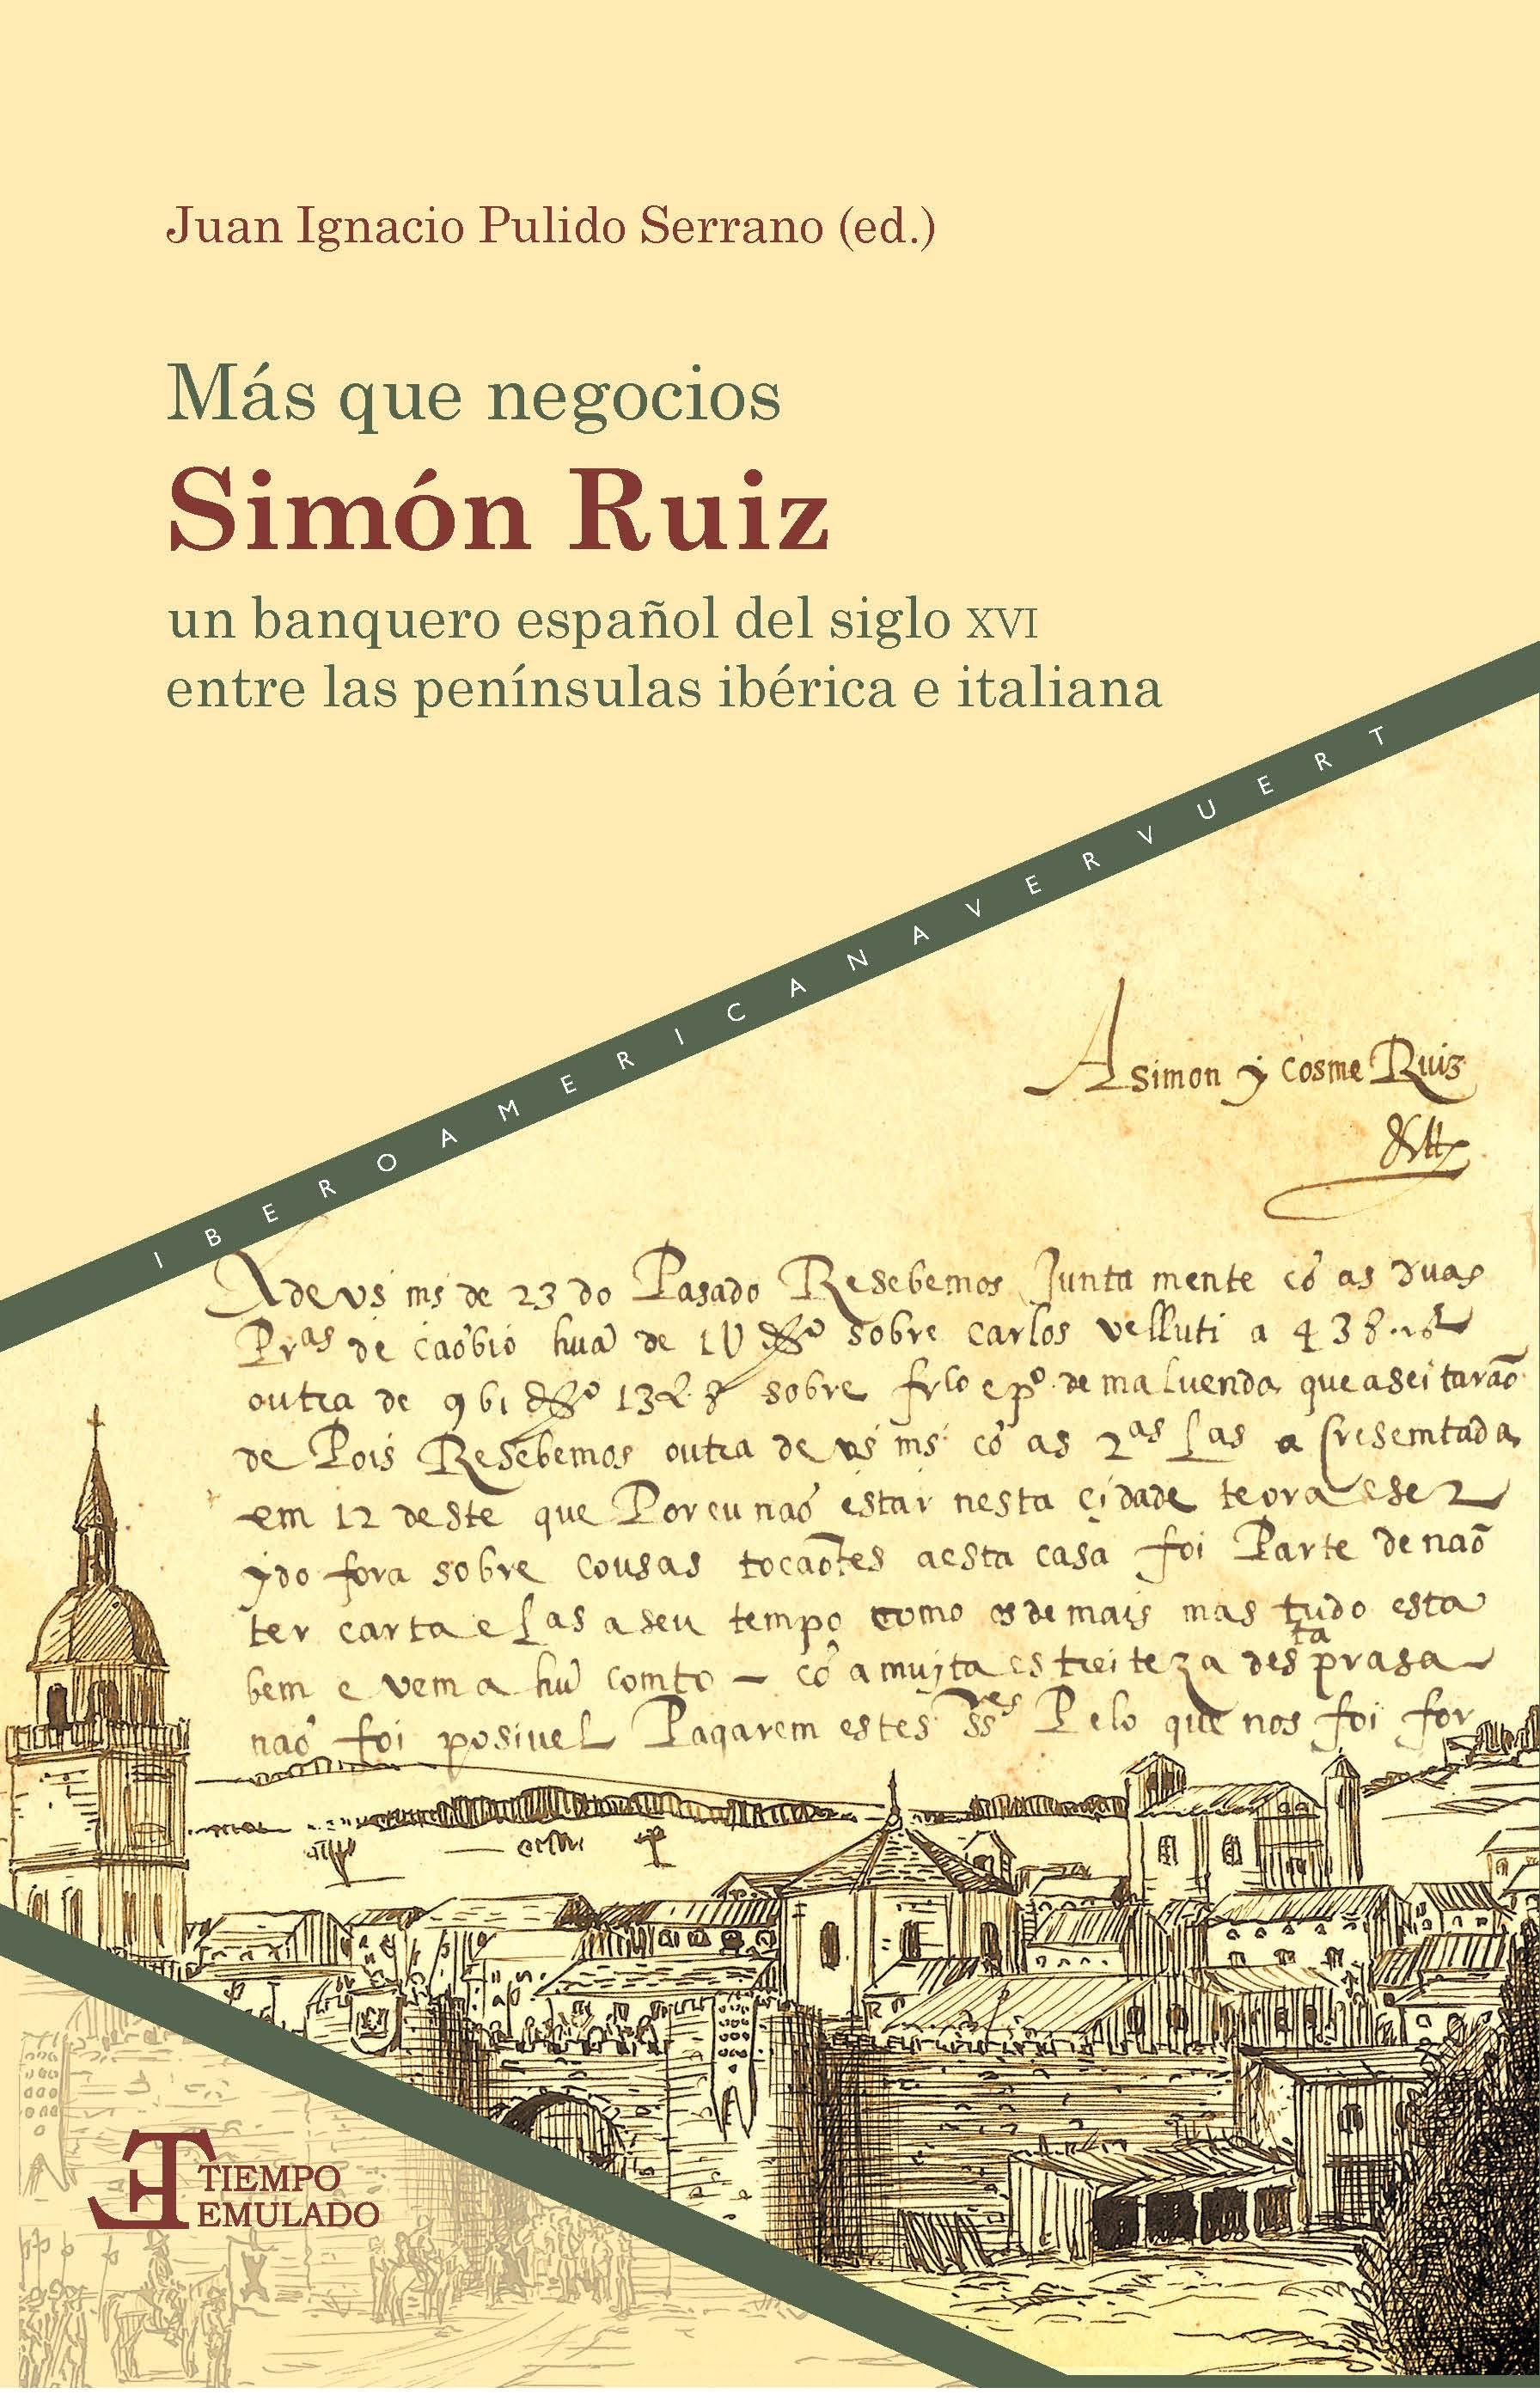 Más que negocios "Simón Ruiz, un banquero español del siglo XVI entre las penínsulas ibérica e italiana"